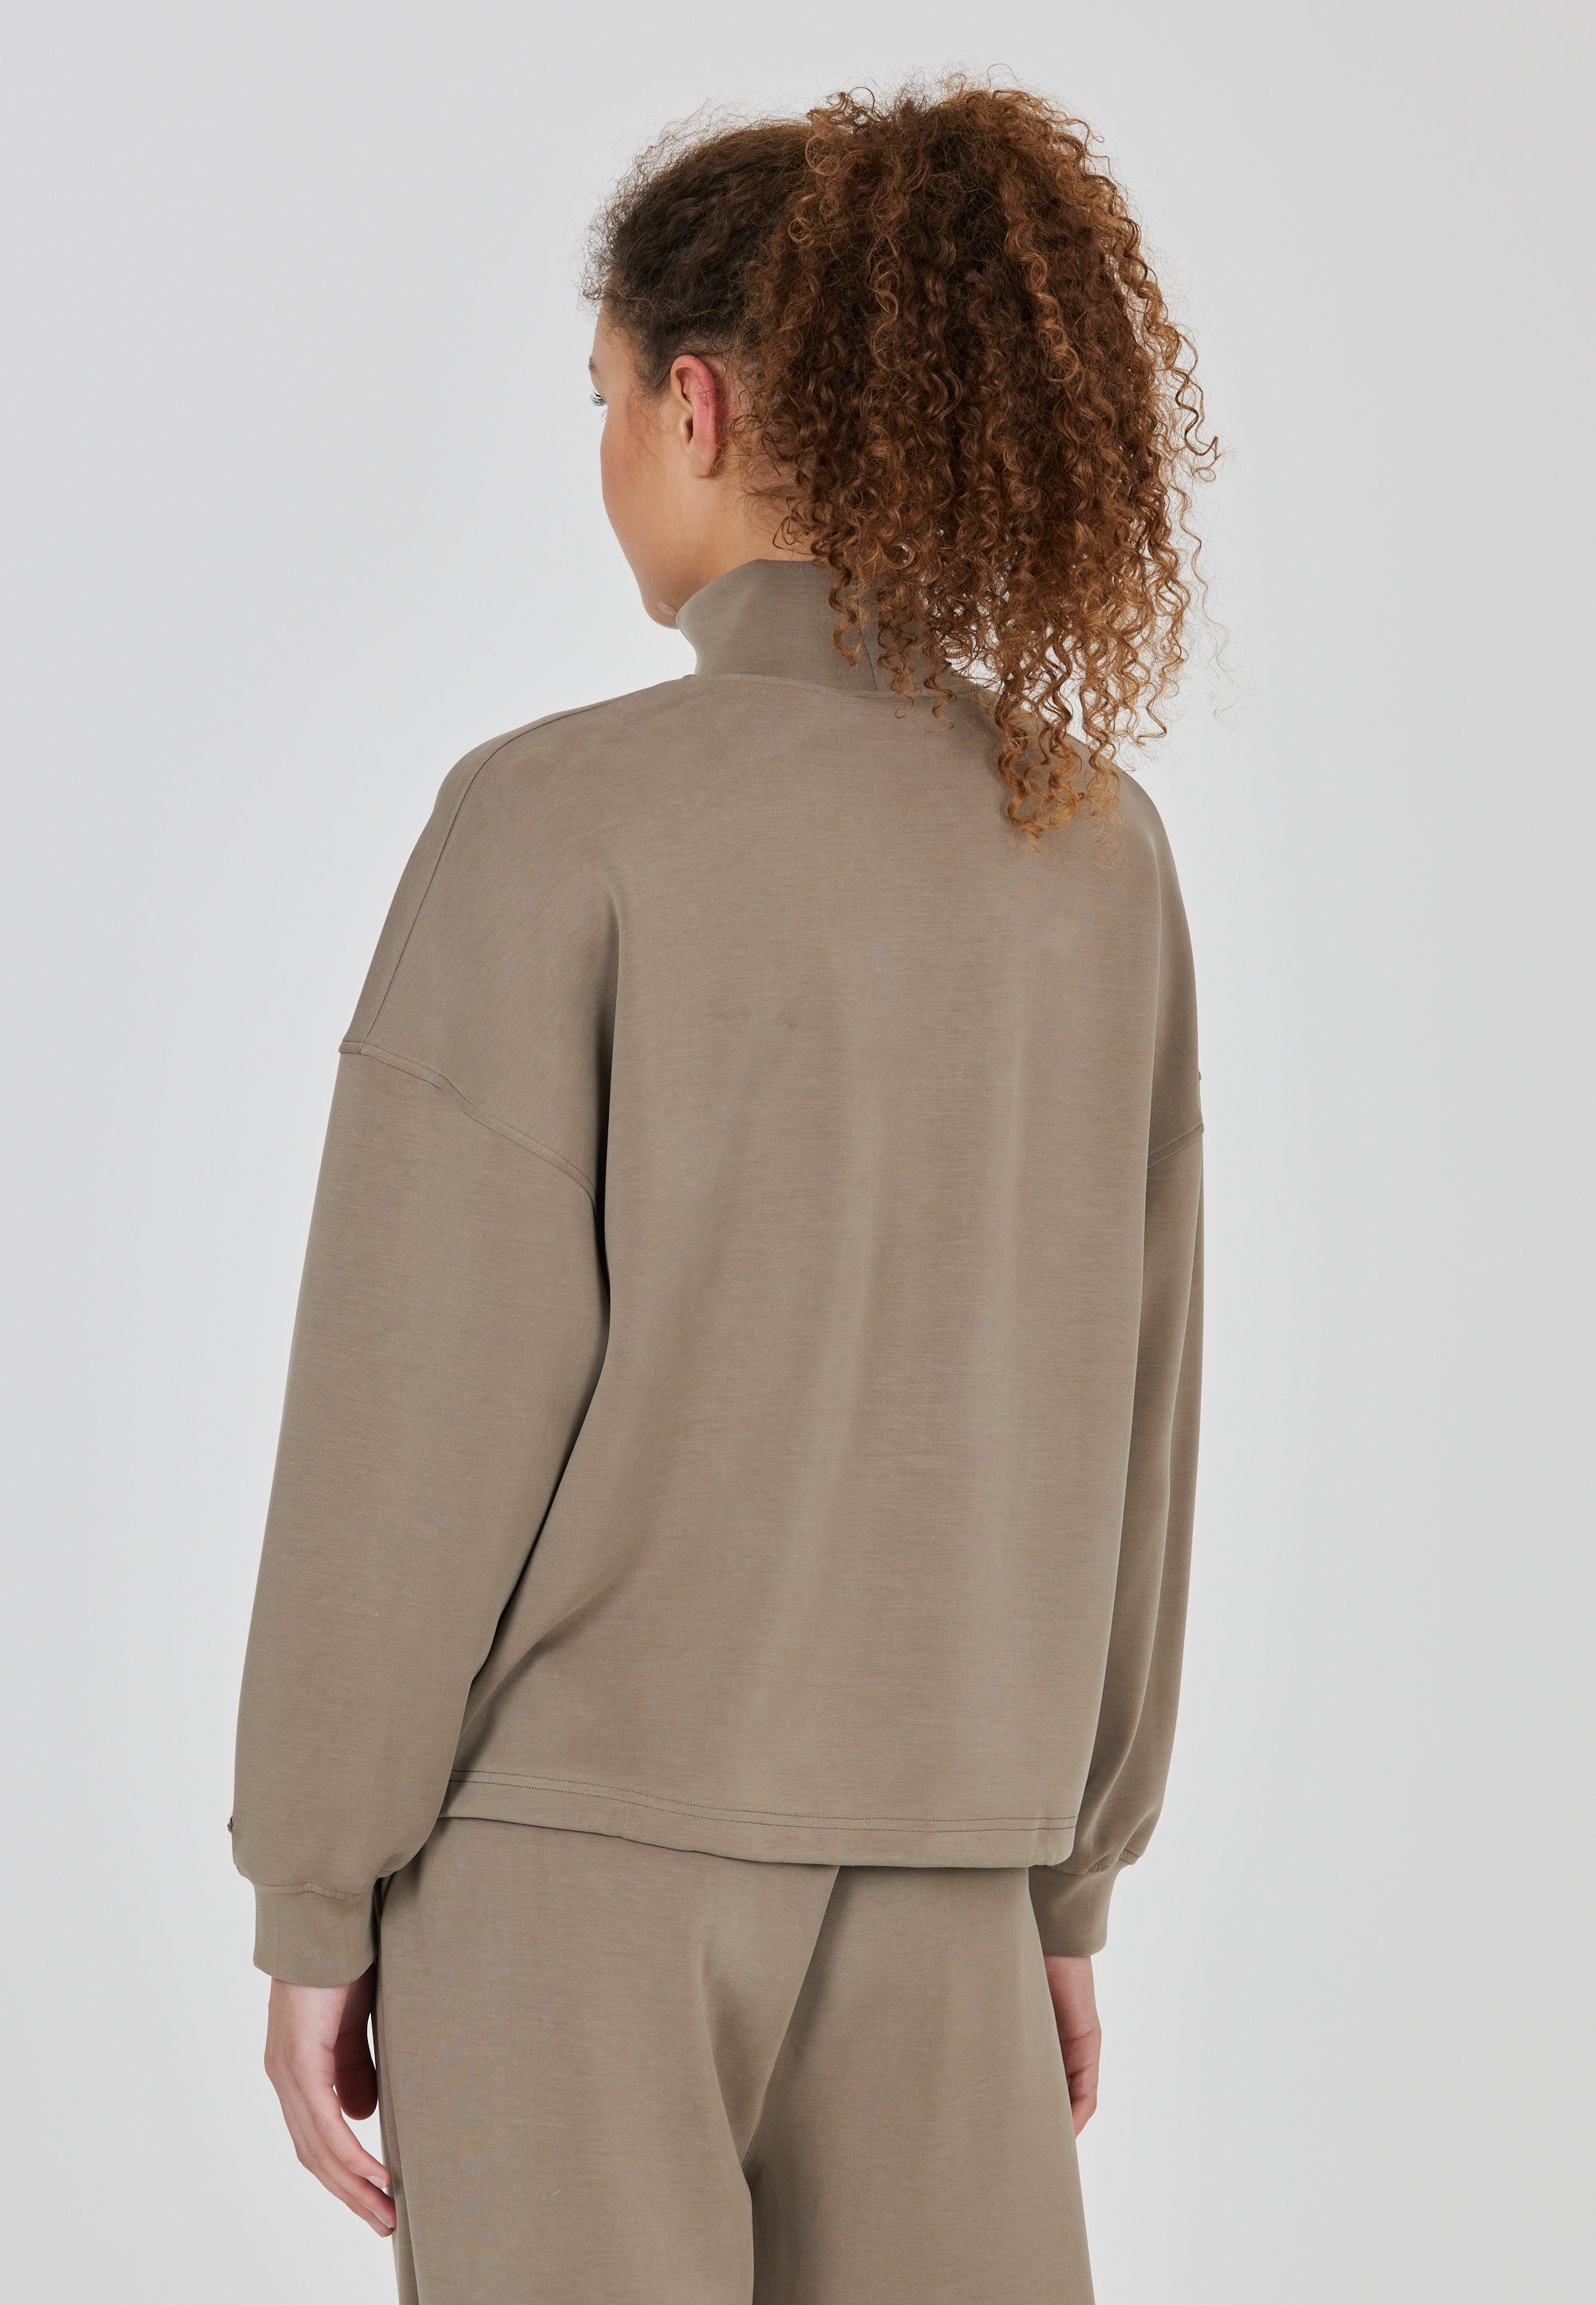 mit und hohem Tragekomfort Kragen camelfarben ATHLECIA Paris Sweatshirt